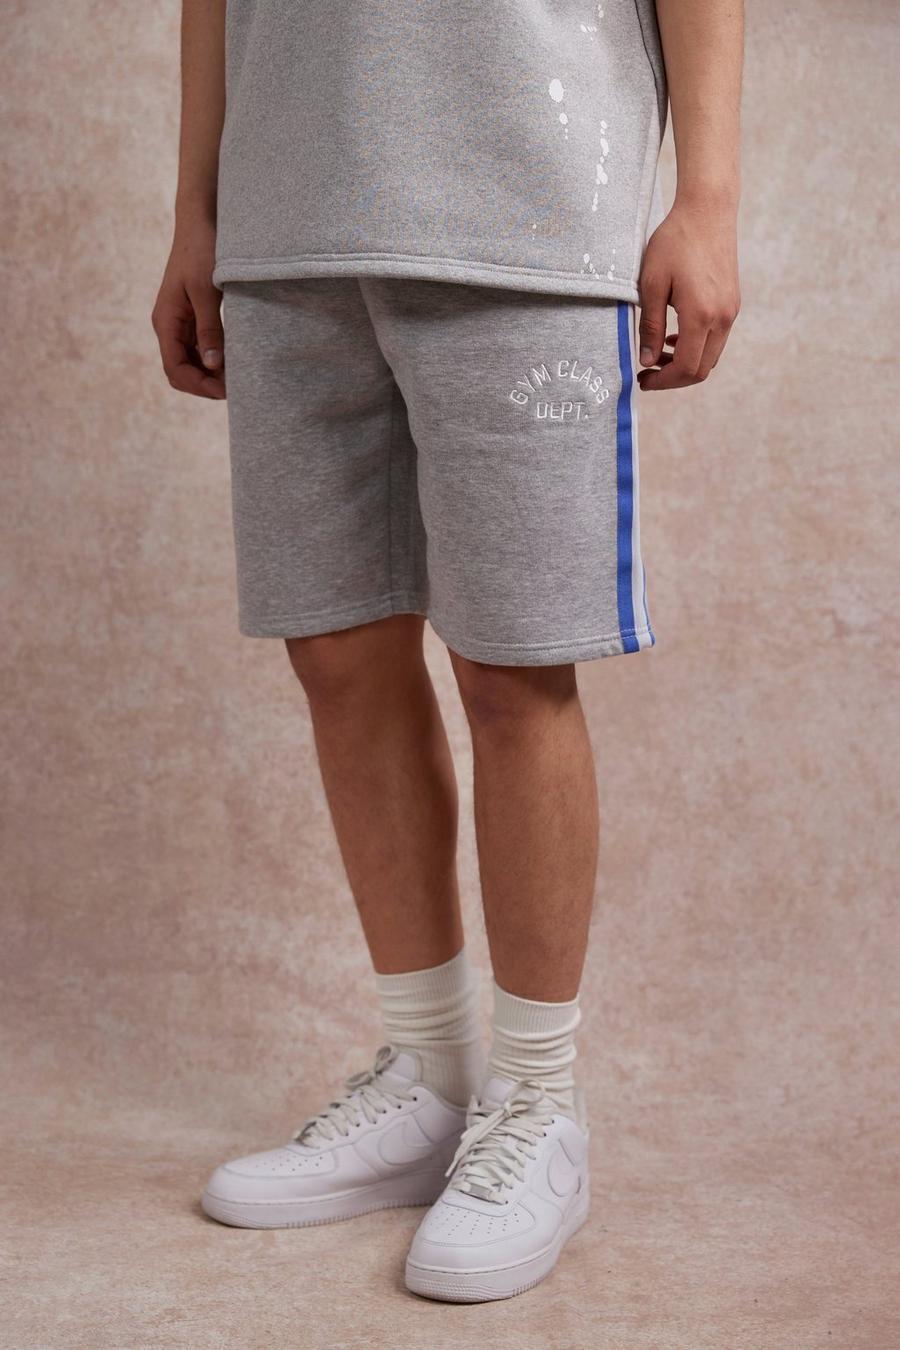 Lockere Shorts mit Gym Class Streifen, Grey marl grau image number 1